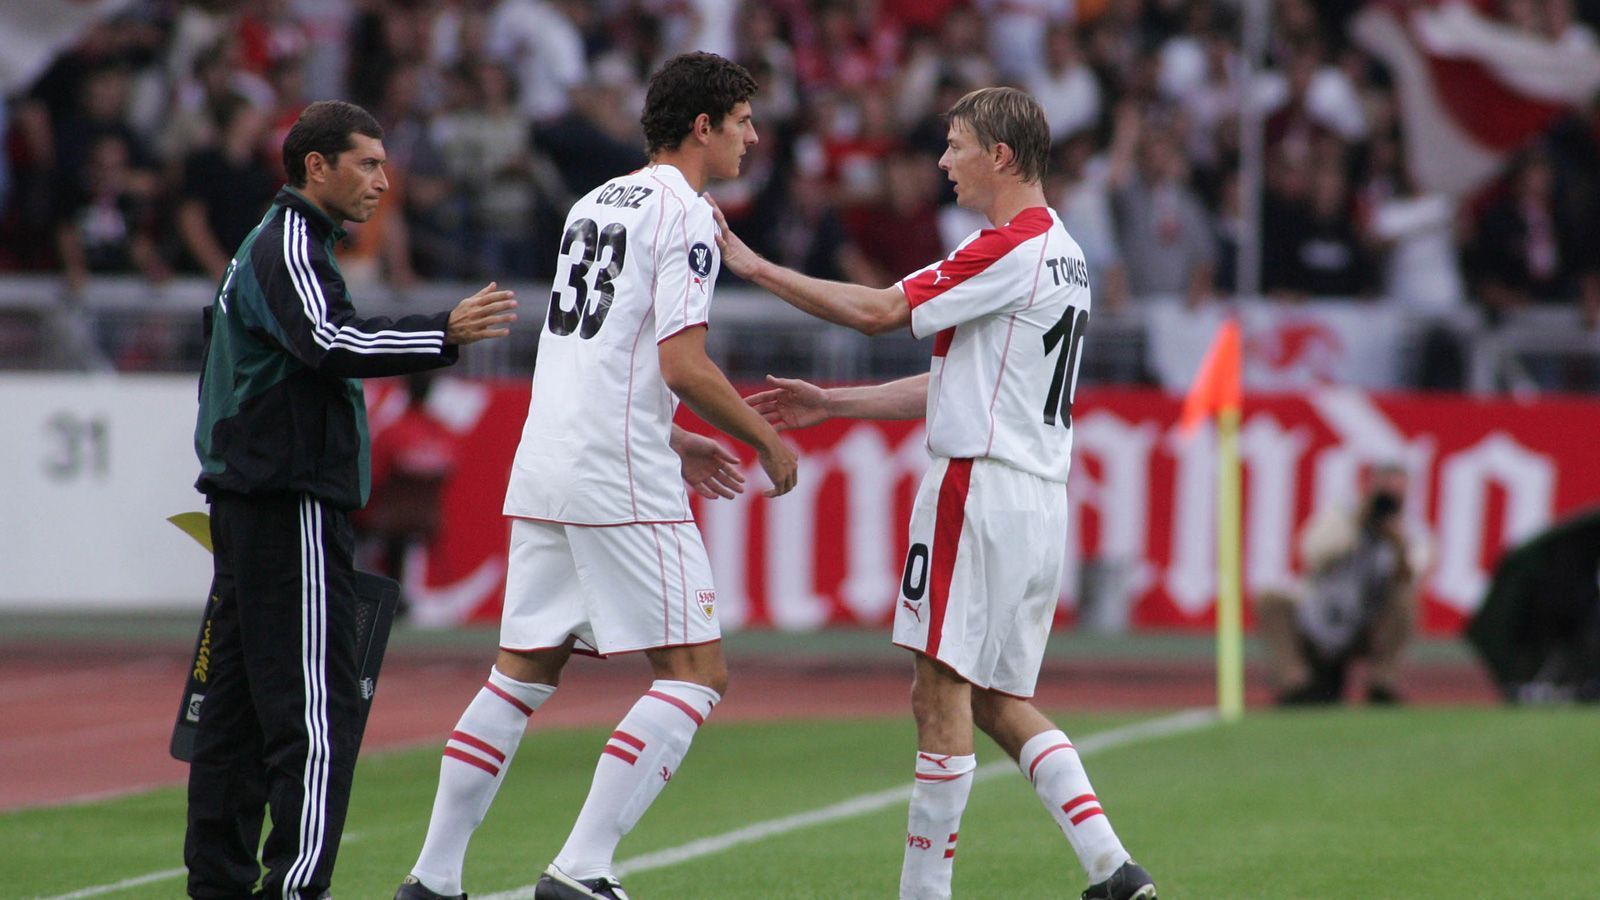 
                <strong>Debüt gegen Hamburger SV </strong><br>
                Mario Gomez feierte sein Bundesligadebüt in Stuttgart bei einer 1:2-Niederlage gegen den Hamburger SV am 8. Mai 2004. Sein erstes Tor bejubelte der damalige Shooting-Star vier Monate später beim 2:1-Sieg in Mainz, doch der Stürmer spielte nur sporadisch für die erste Mannschaft und kam überwiegend für die zweite Garde zum Einsatz. In seiner ersten richtigen Bundesliga-Spielzeit, 2005/06, stand Gomez bei 30 VfB-Spielen auf dem Platz und traf dabei sechs Mal ins gegnerische Tor.
              